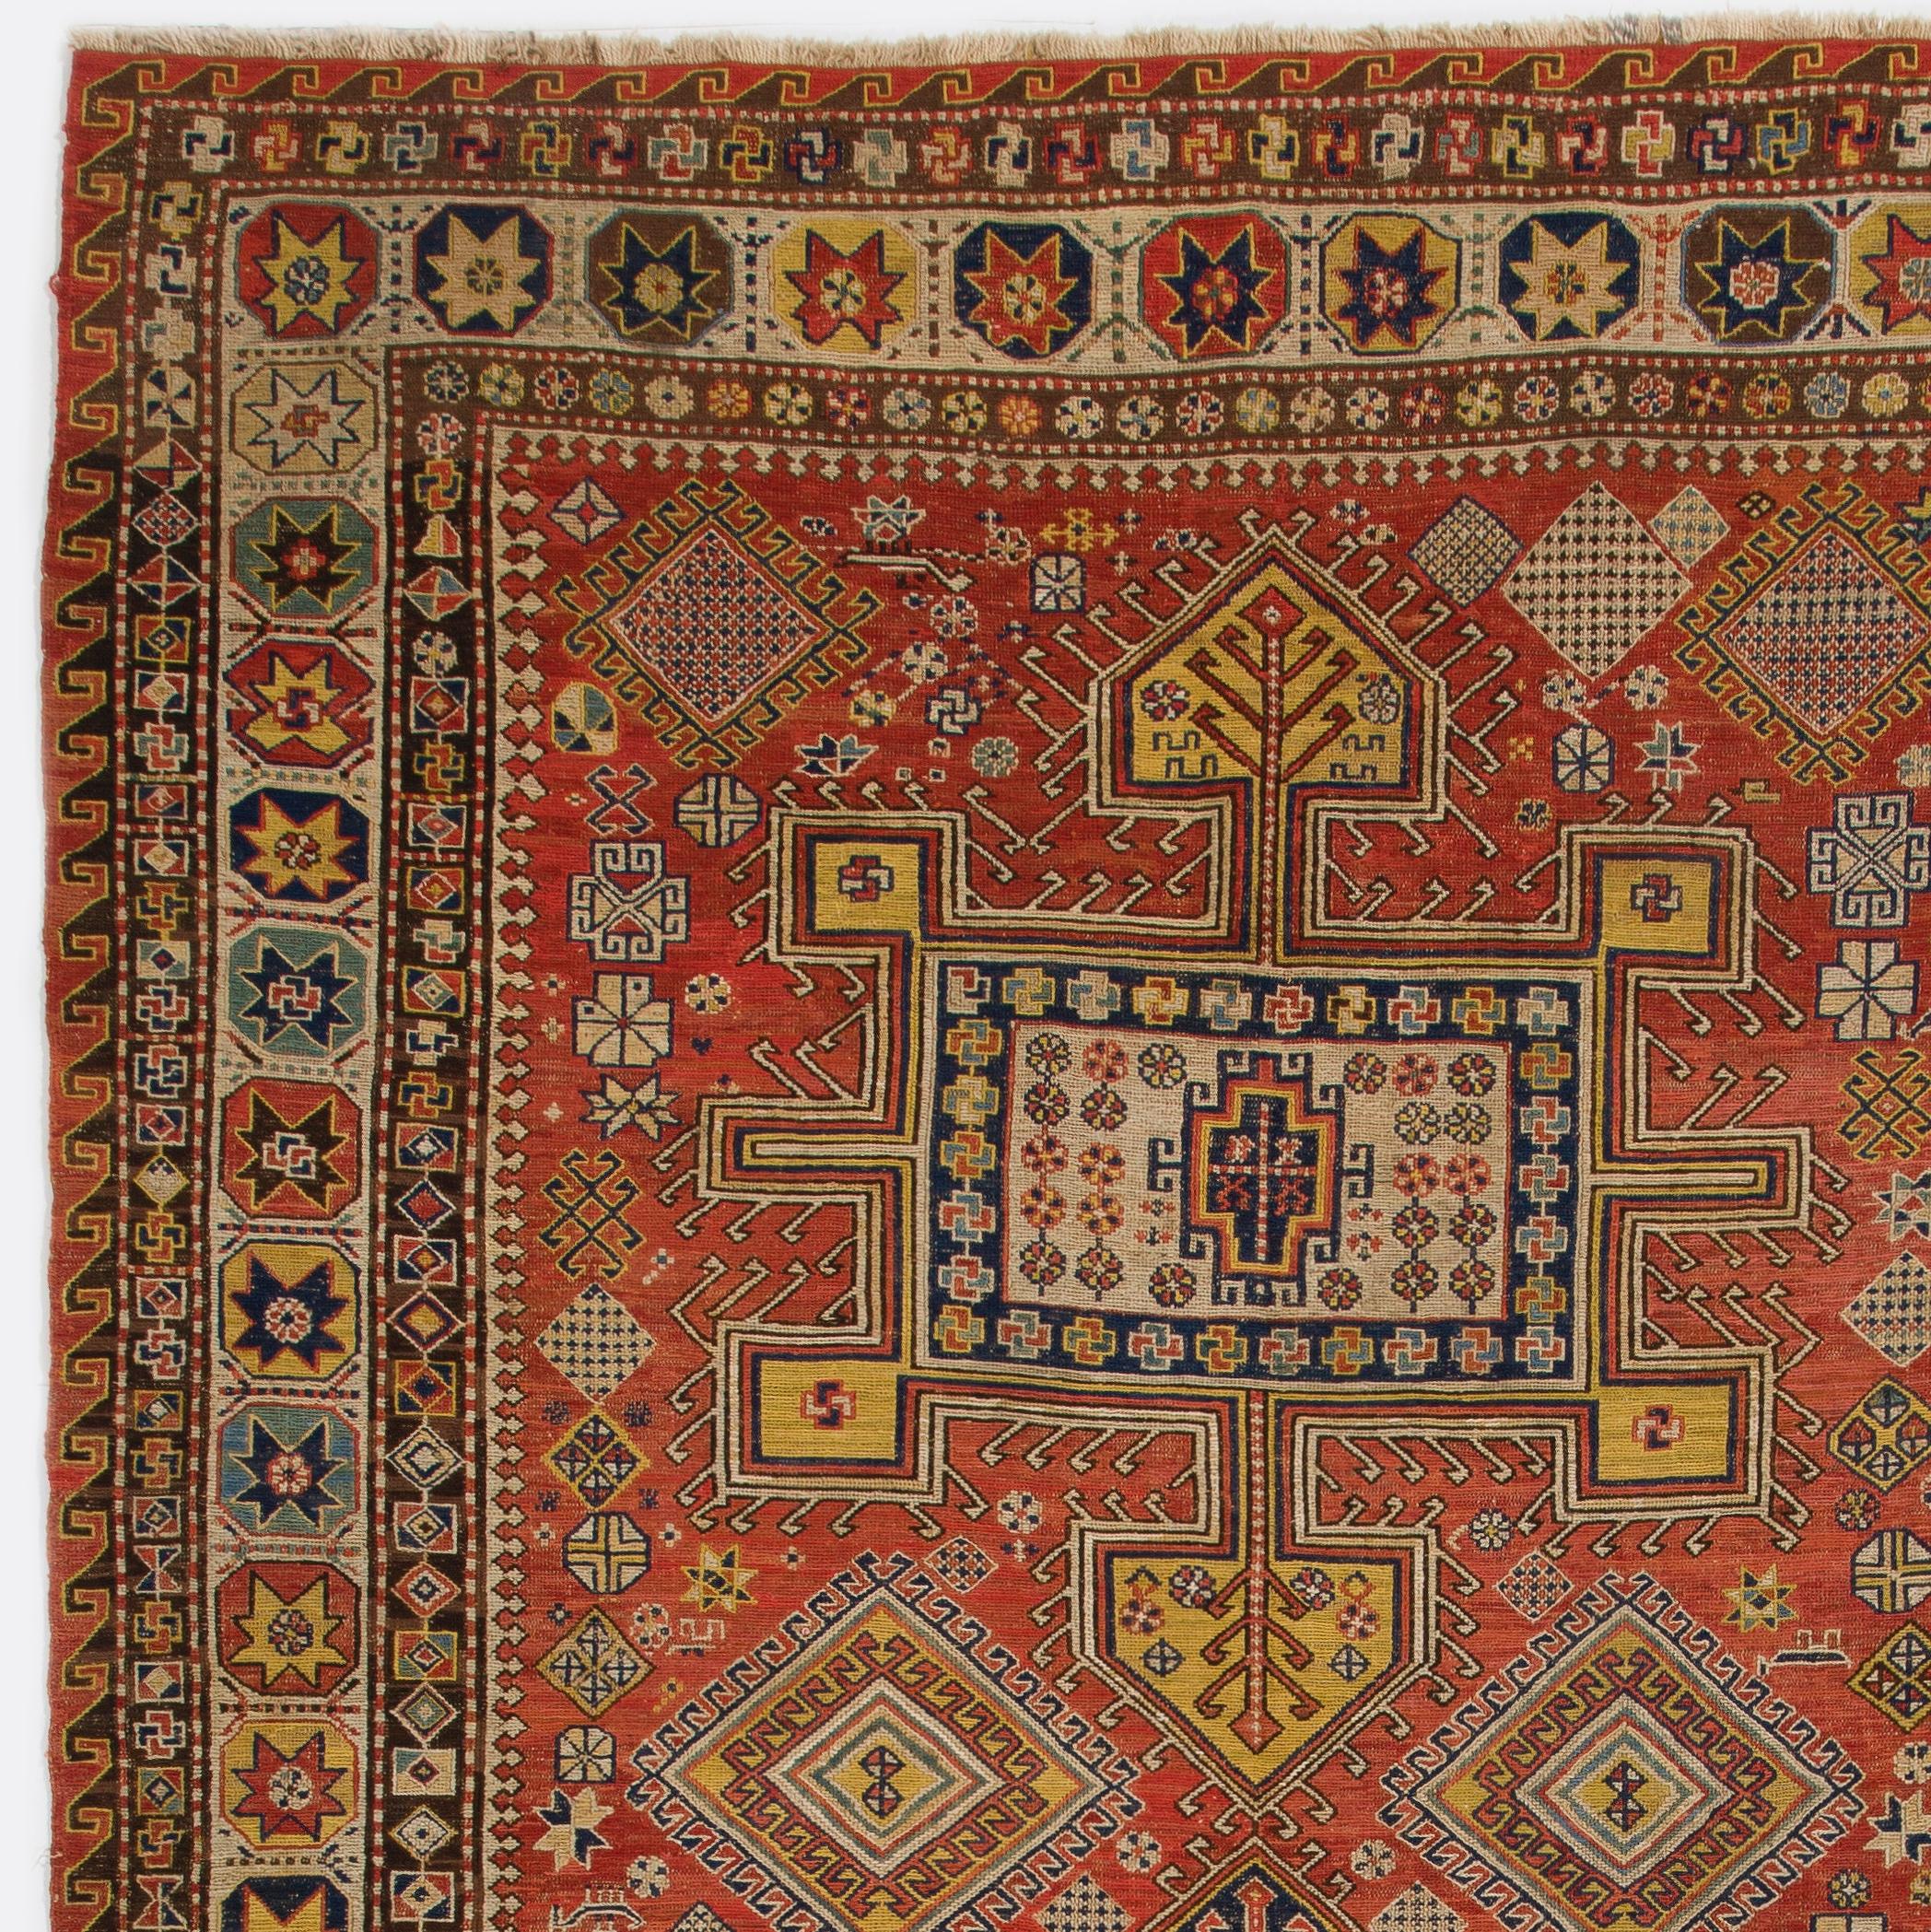 Hand-Woven 5.7x10 ft Antique Caucasian Konaghend Soumak Rug, circa 1875, Collectors Carpet For Sale